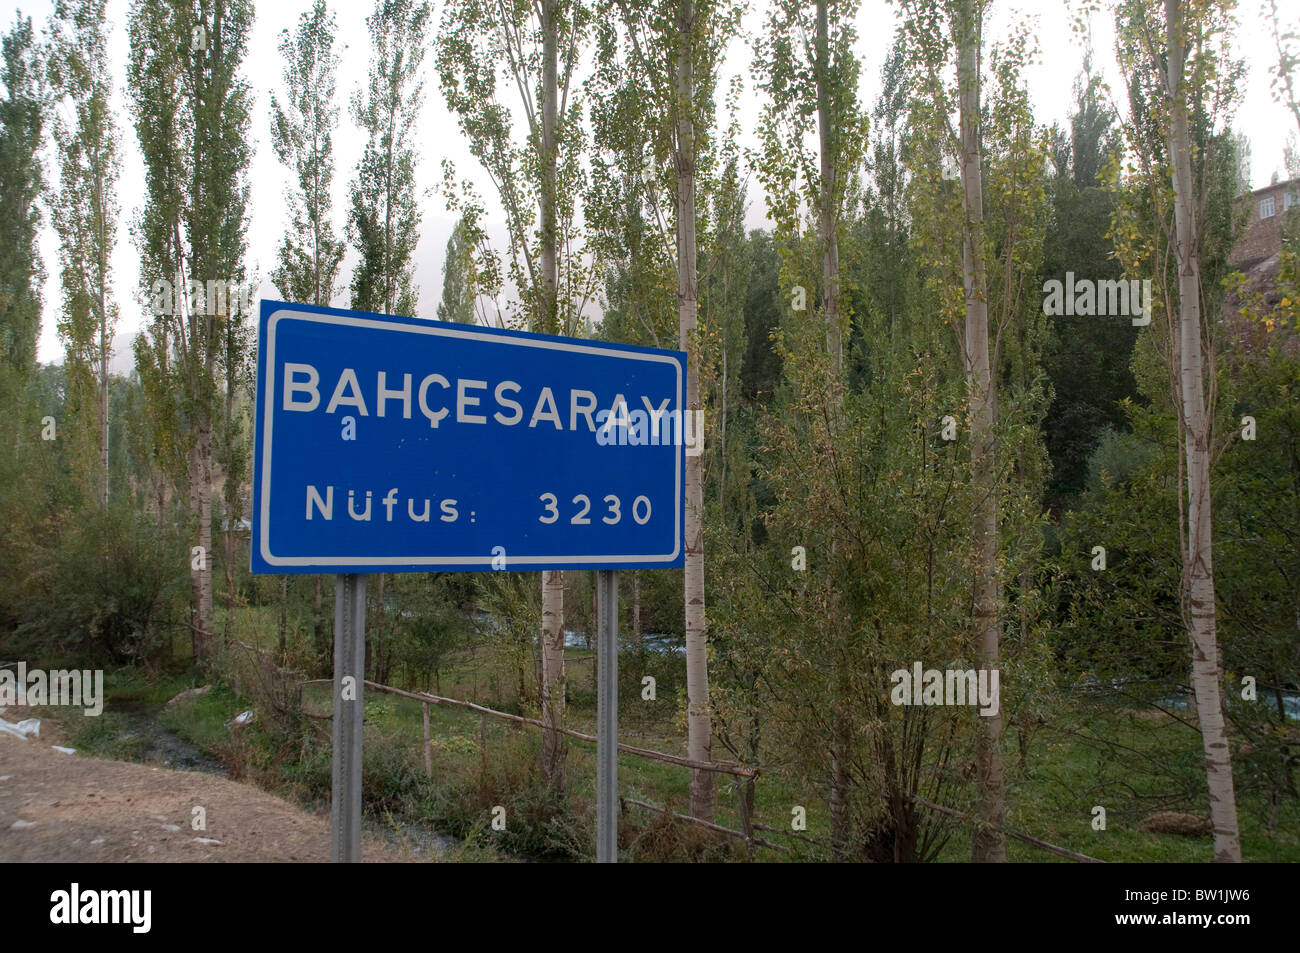 La señal de carretera al entrar en la aldea de Bahcesaray, en la provincia de Van, en la región oriental de Anatolia, al sureste de Turquía. Foto de stock